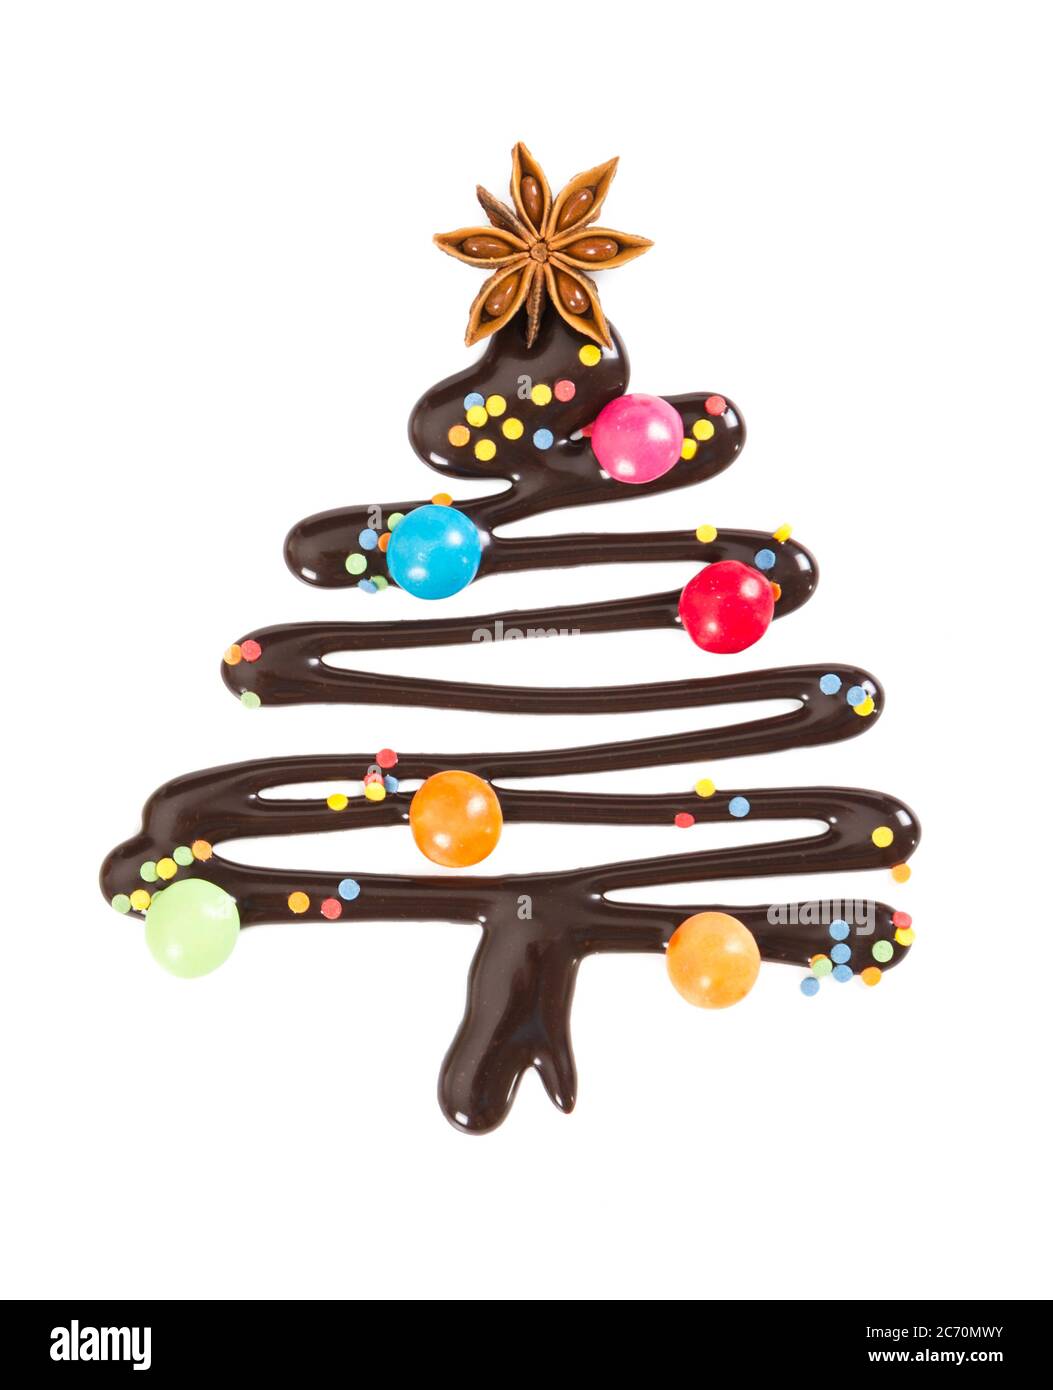 Albero di natale dolce con caramelle e spruzzette decorative isolate su sfondo bianco. Simbolo di Natale e Capodanno. Foto Stock